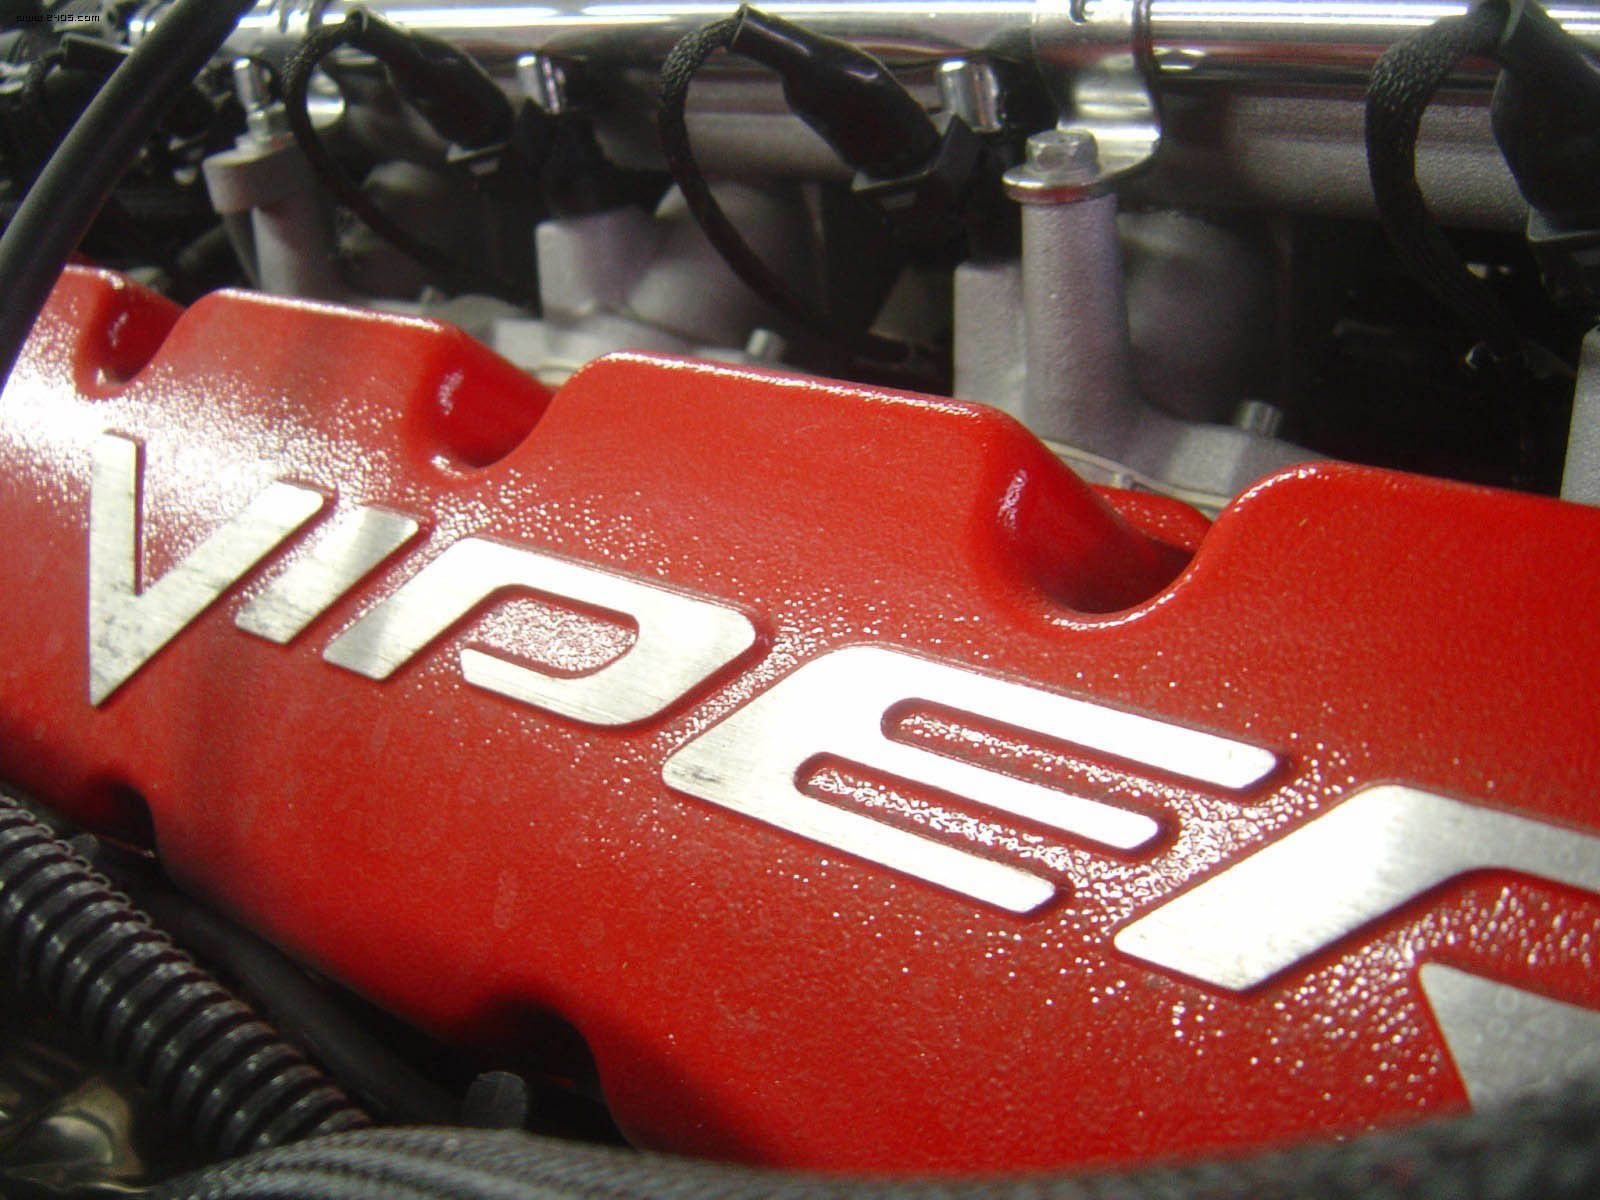 2003 Dodge Viper SRT10